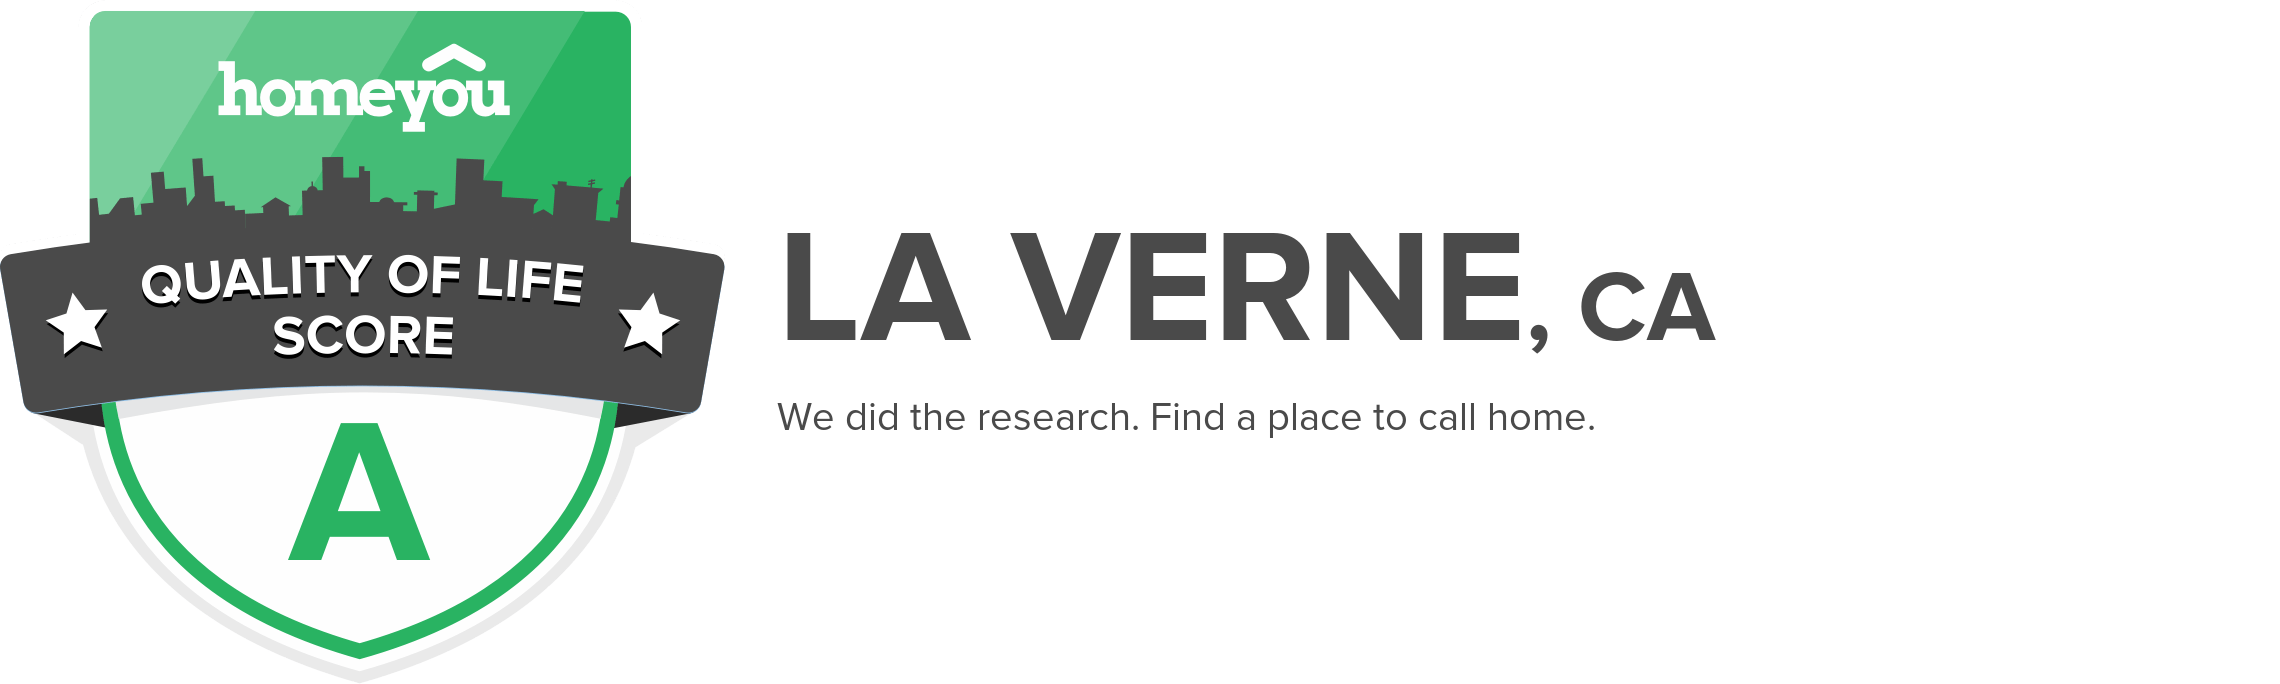 La Verne, CA